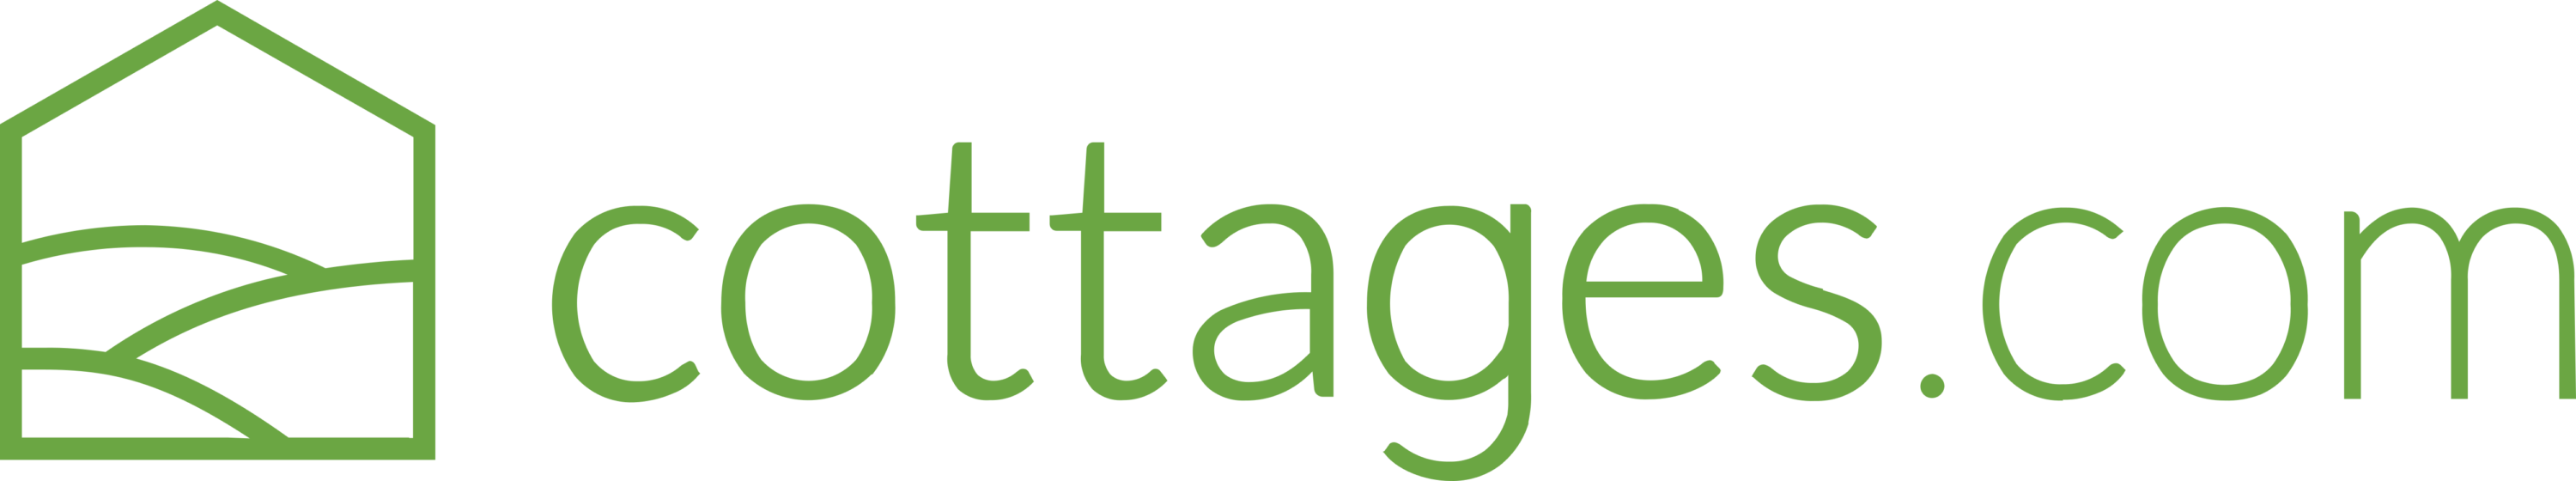 cottages.com Logo